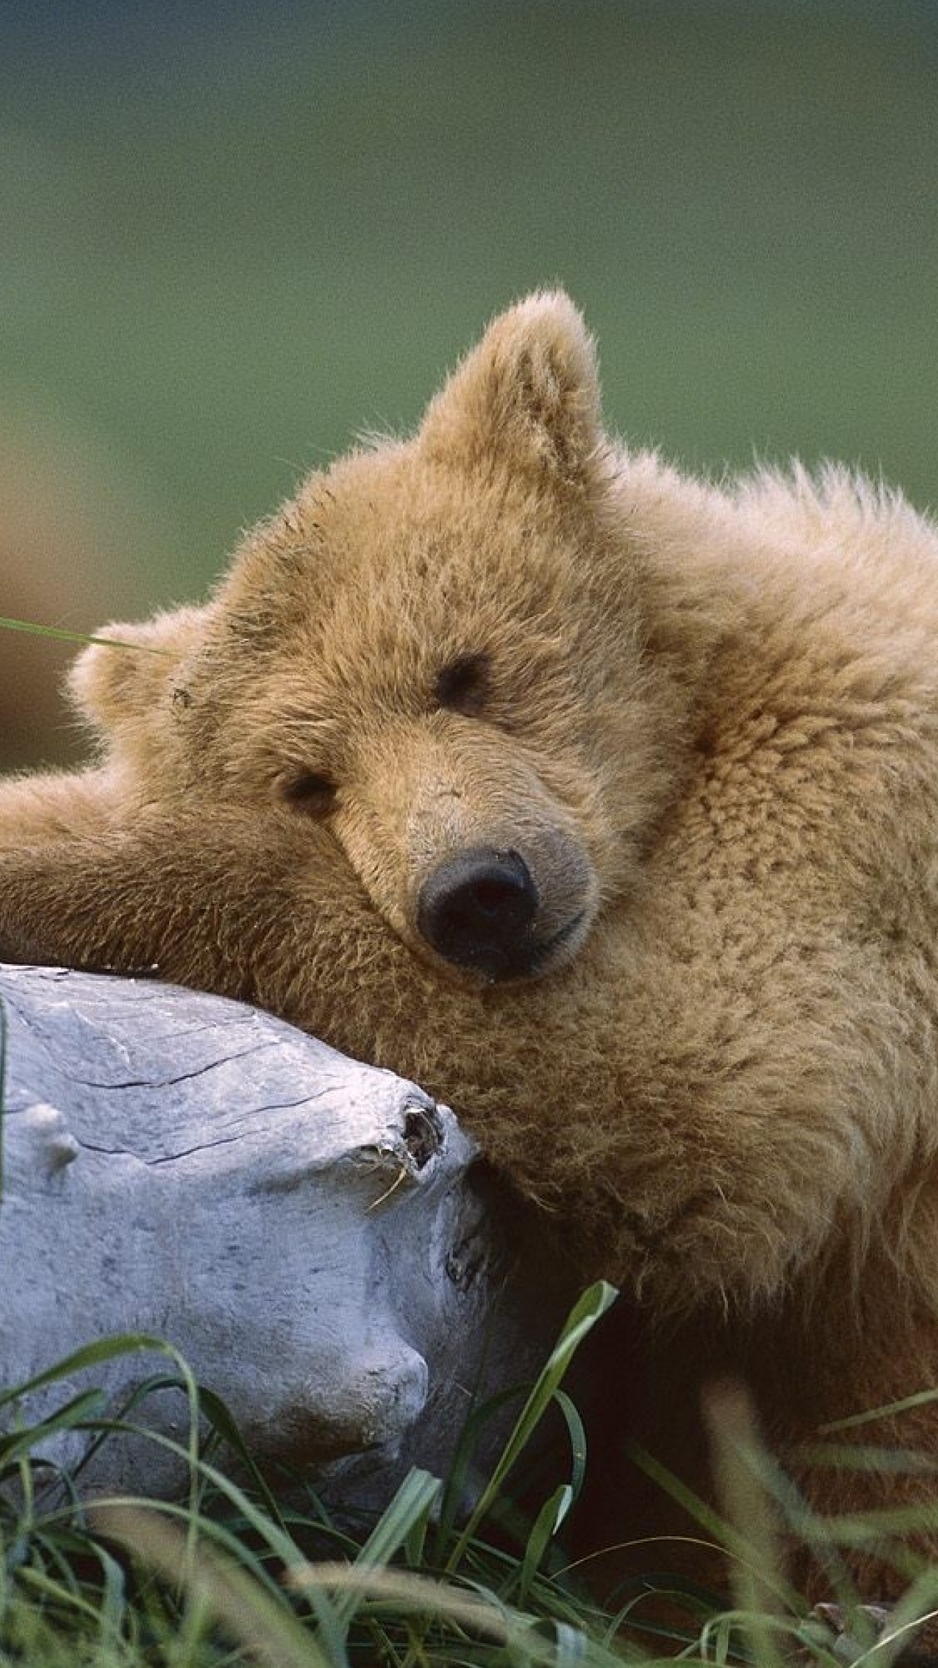 Картинка: Медведь, бурый, шерсть, нос, уши, дерево, трава, лежит, спит